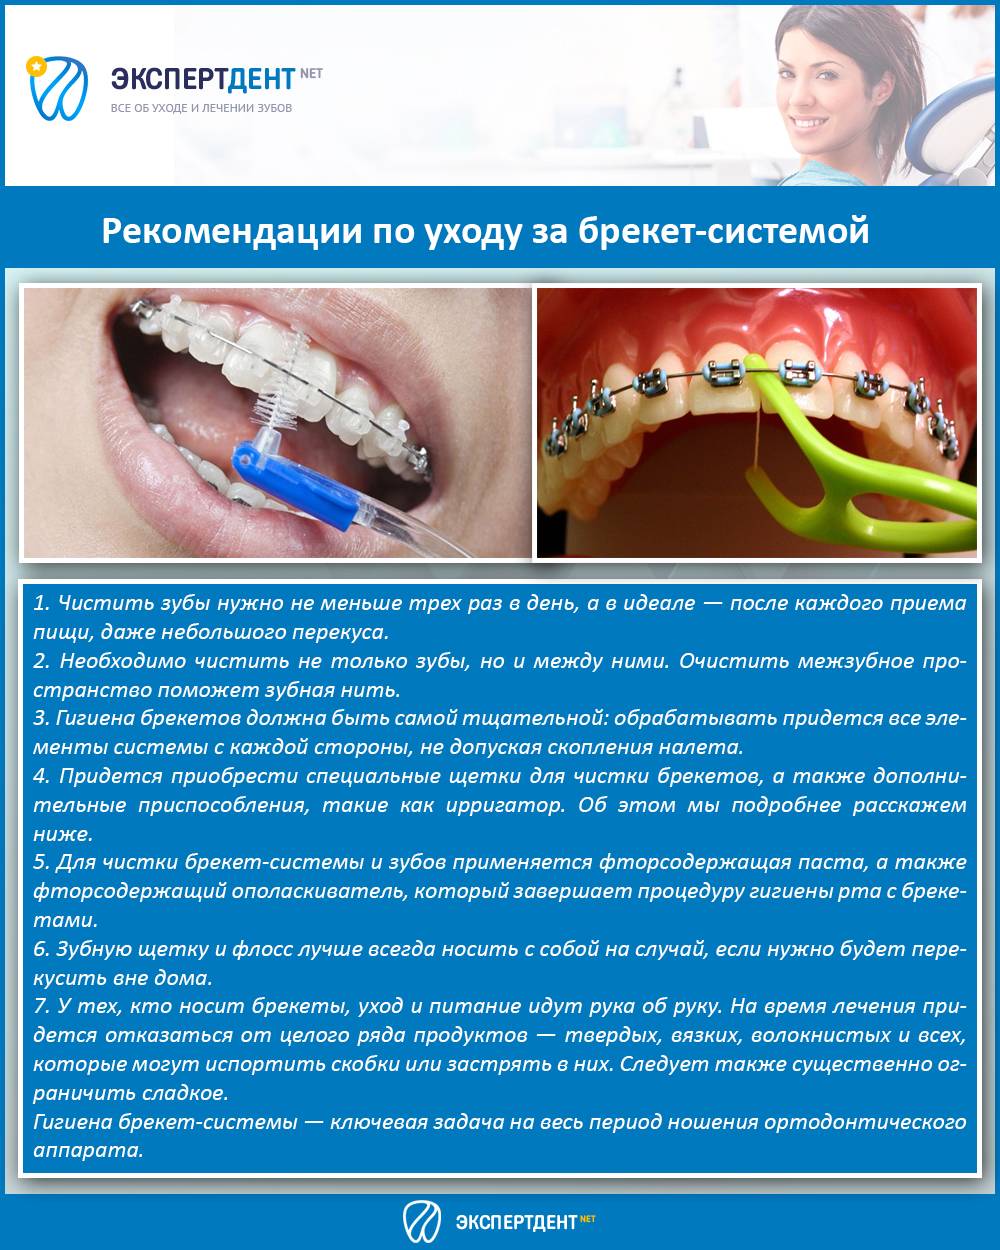 Во время уразы можно ли чистить зубы. Профессиональная гигиена полости рта. Рекомендации по уходу за брекет системой.